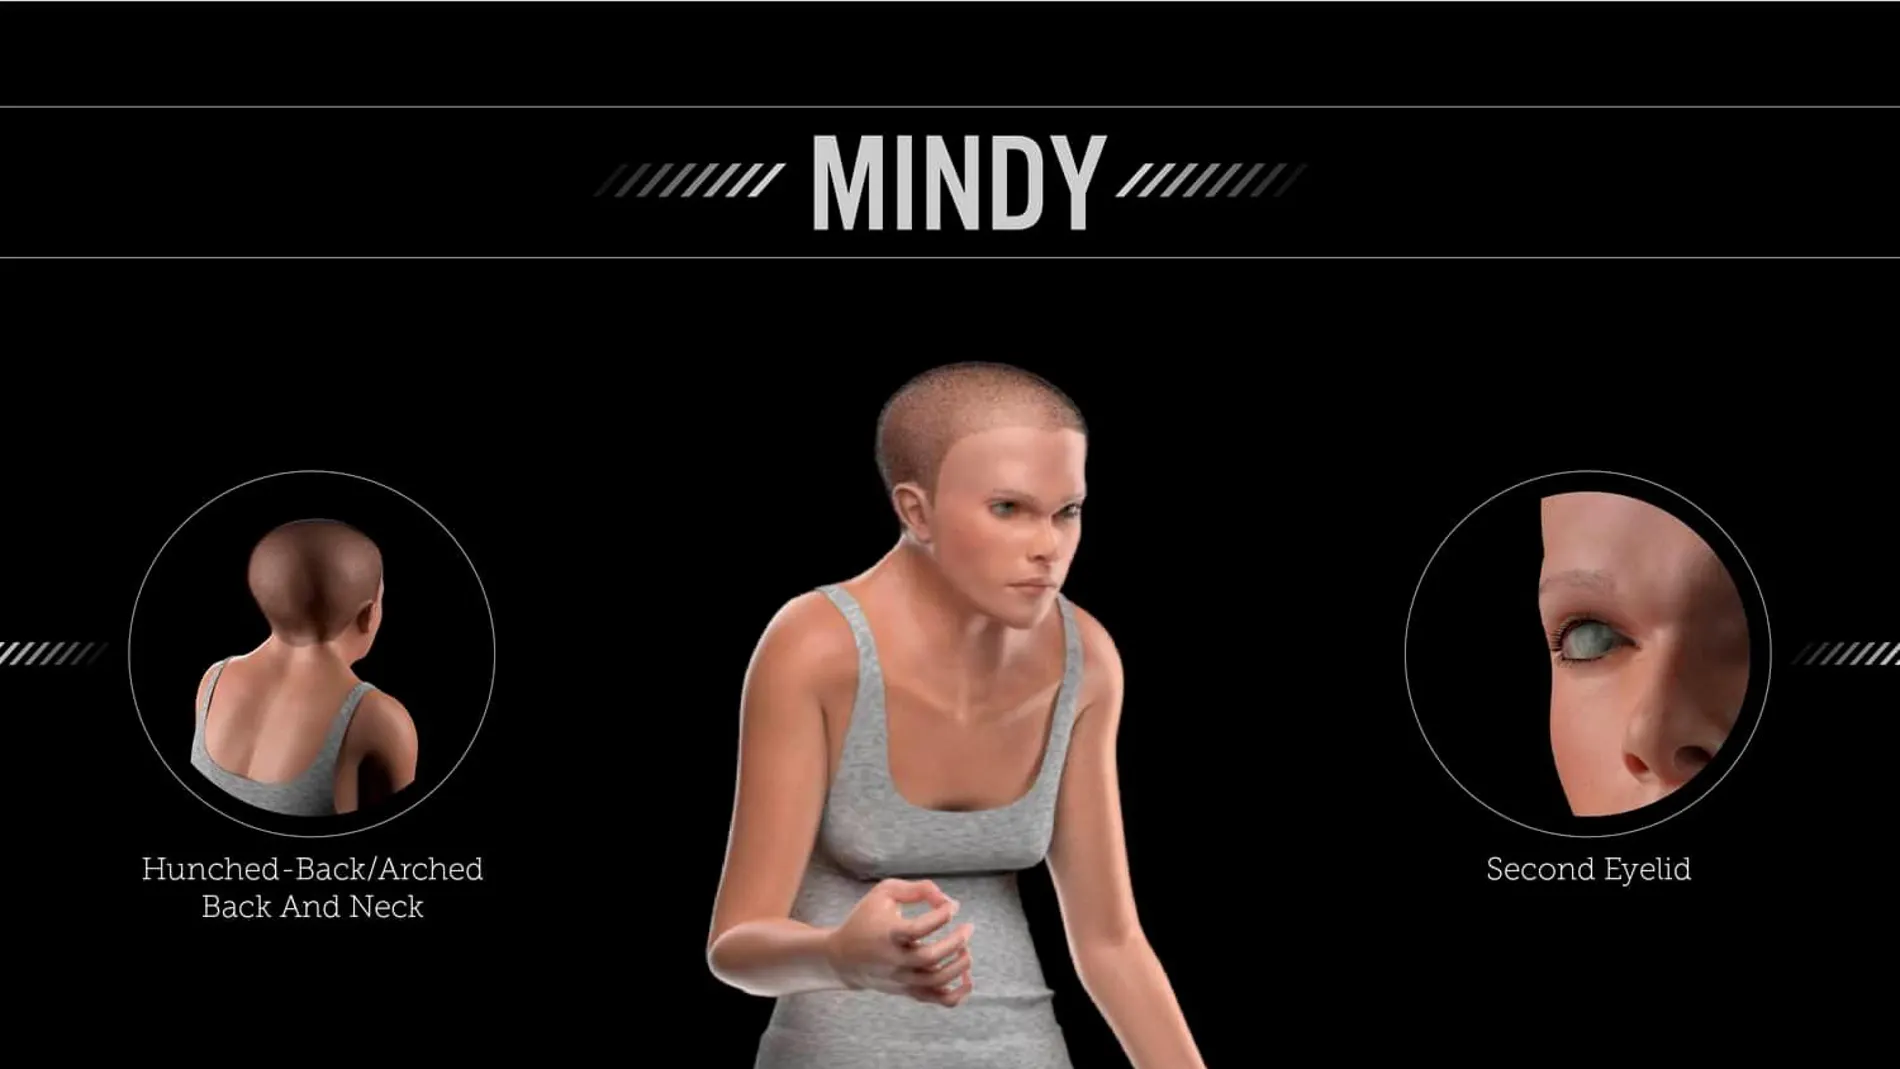 El diseño, llamado Mindy, refleja los cambios que se producirían